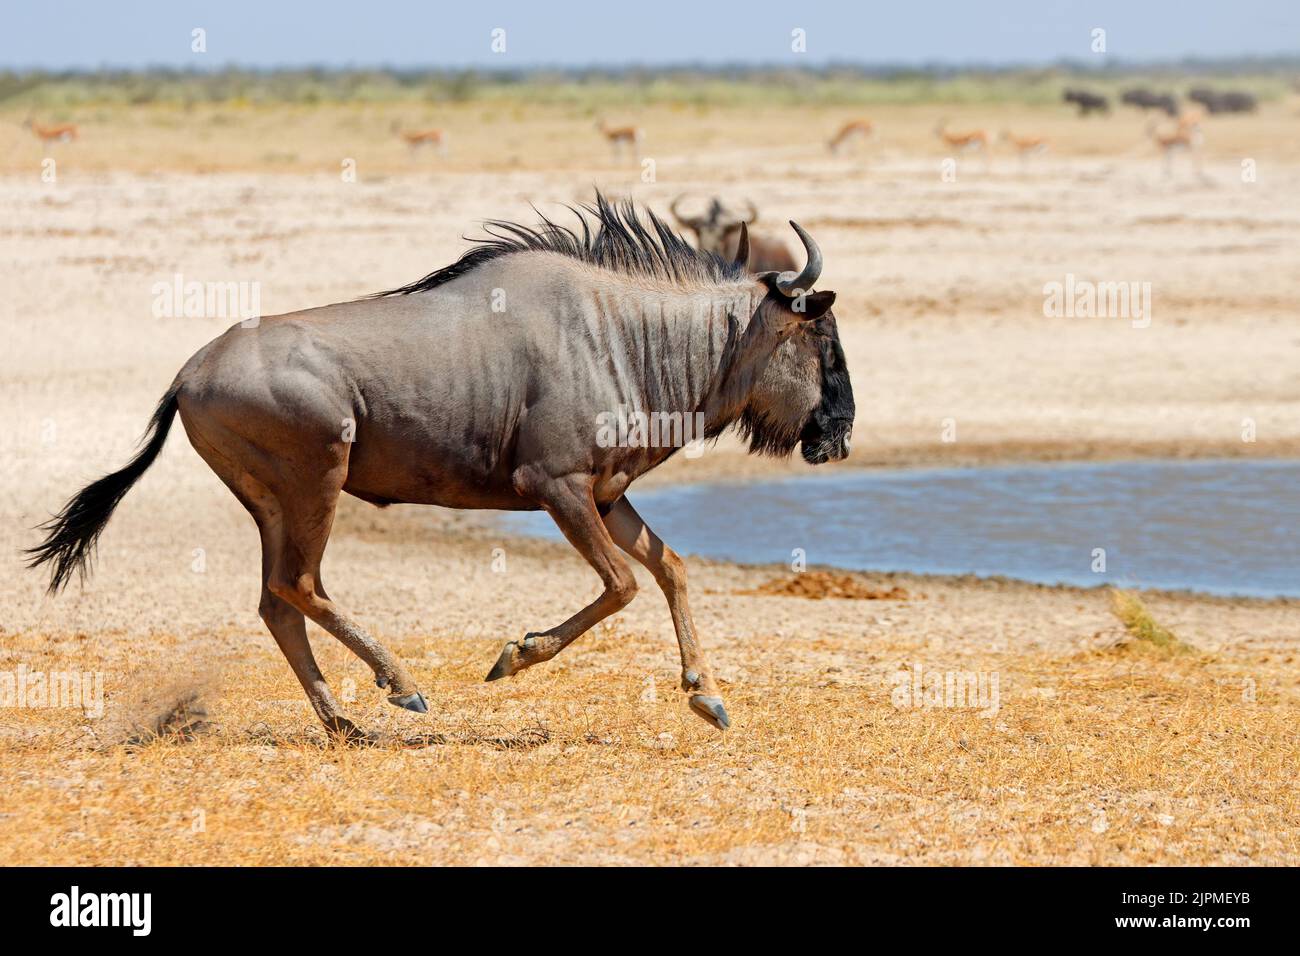 Blue wildebeest (Connochaetes taurinus) running on arid plains, Etosha National Park, Namibia Stock Photo